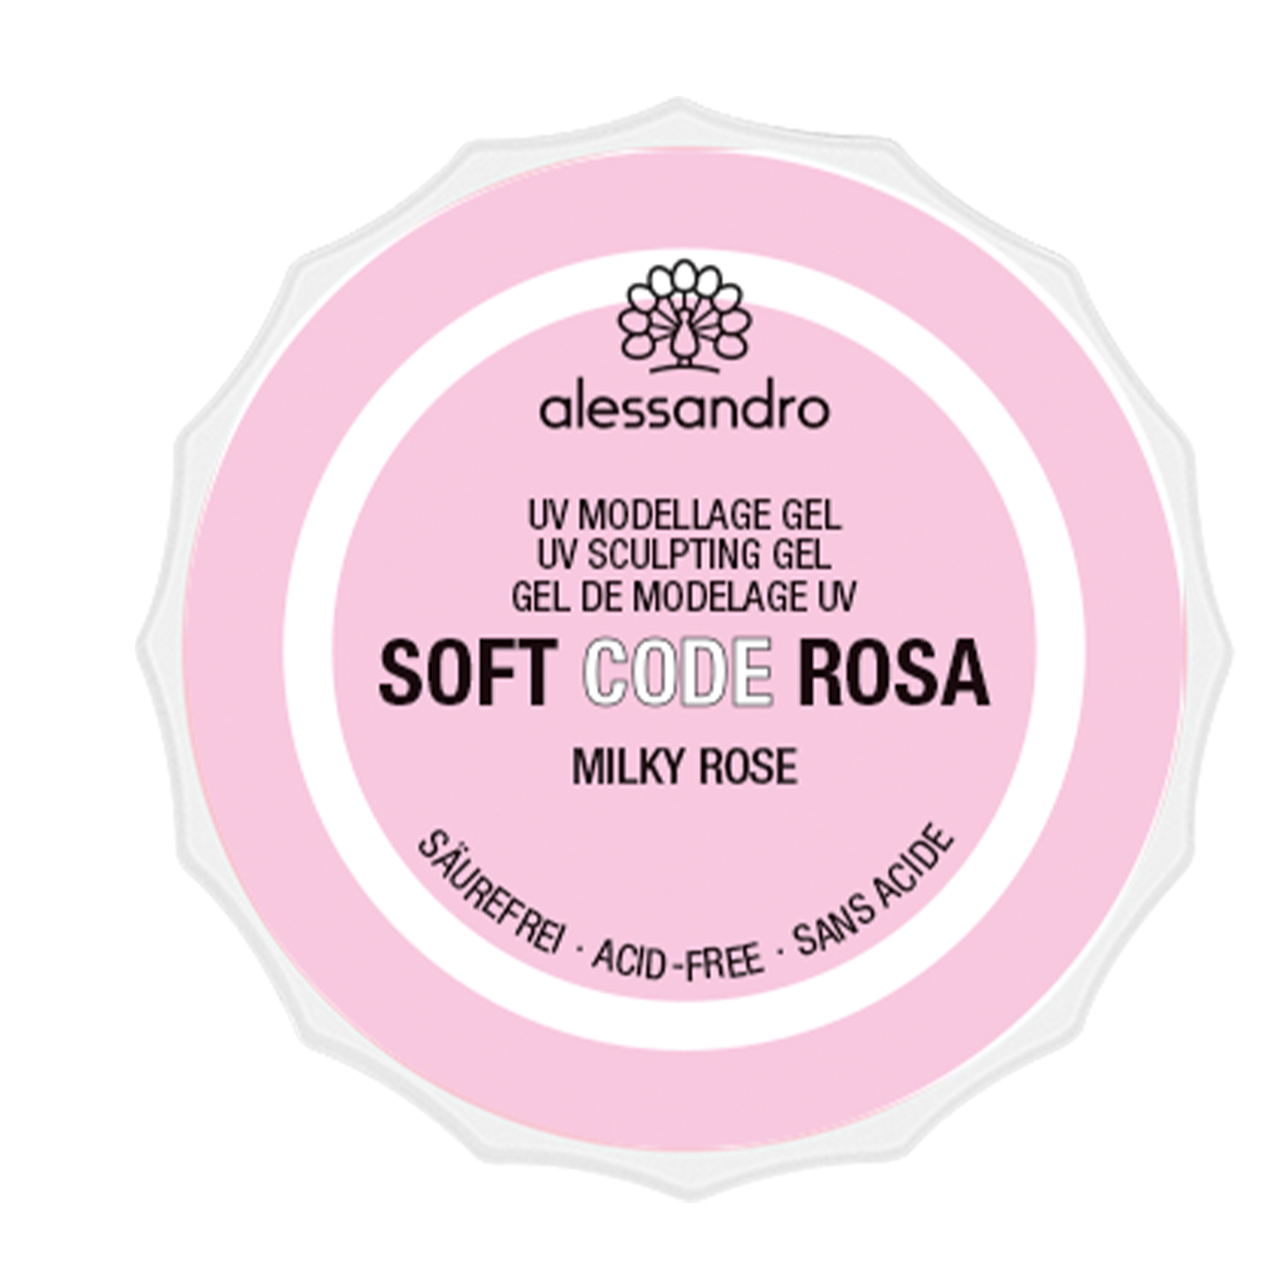 Soft Code Rosa, 15g